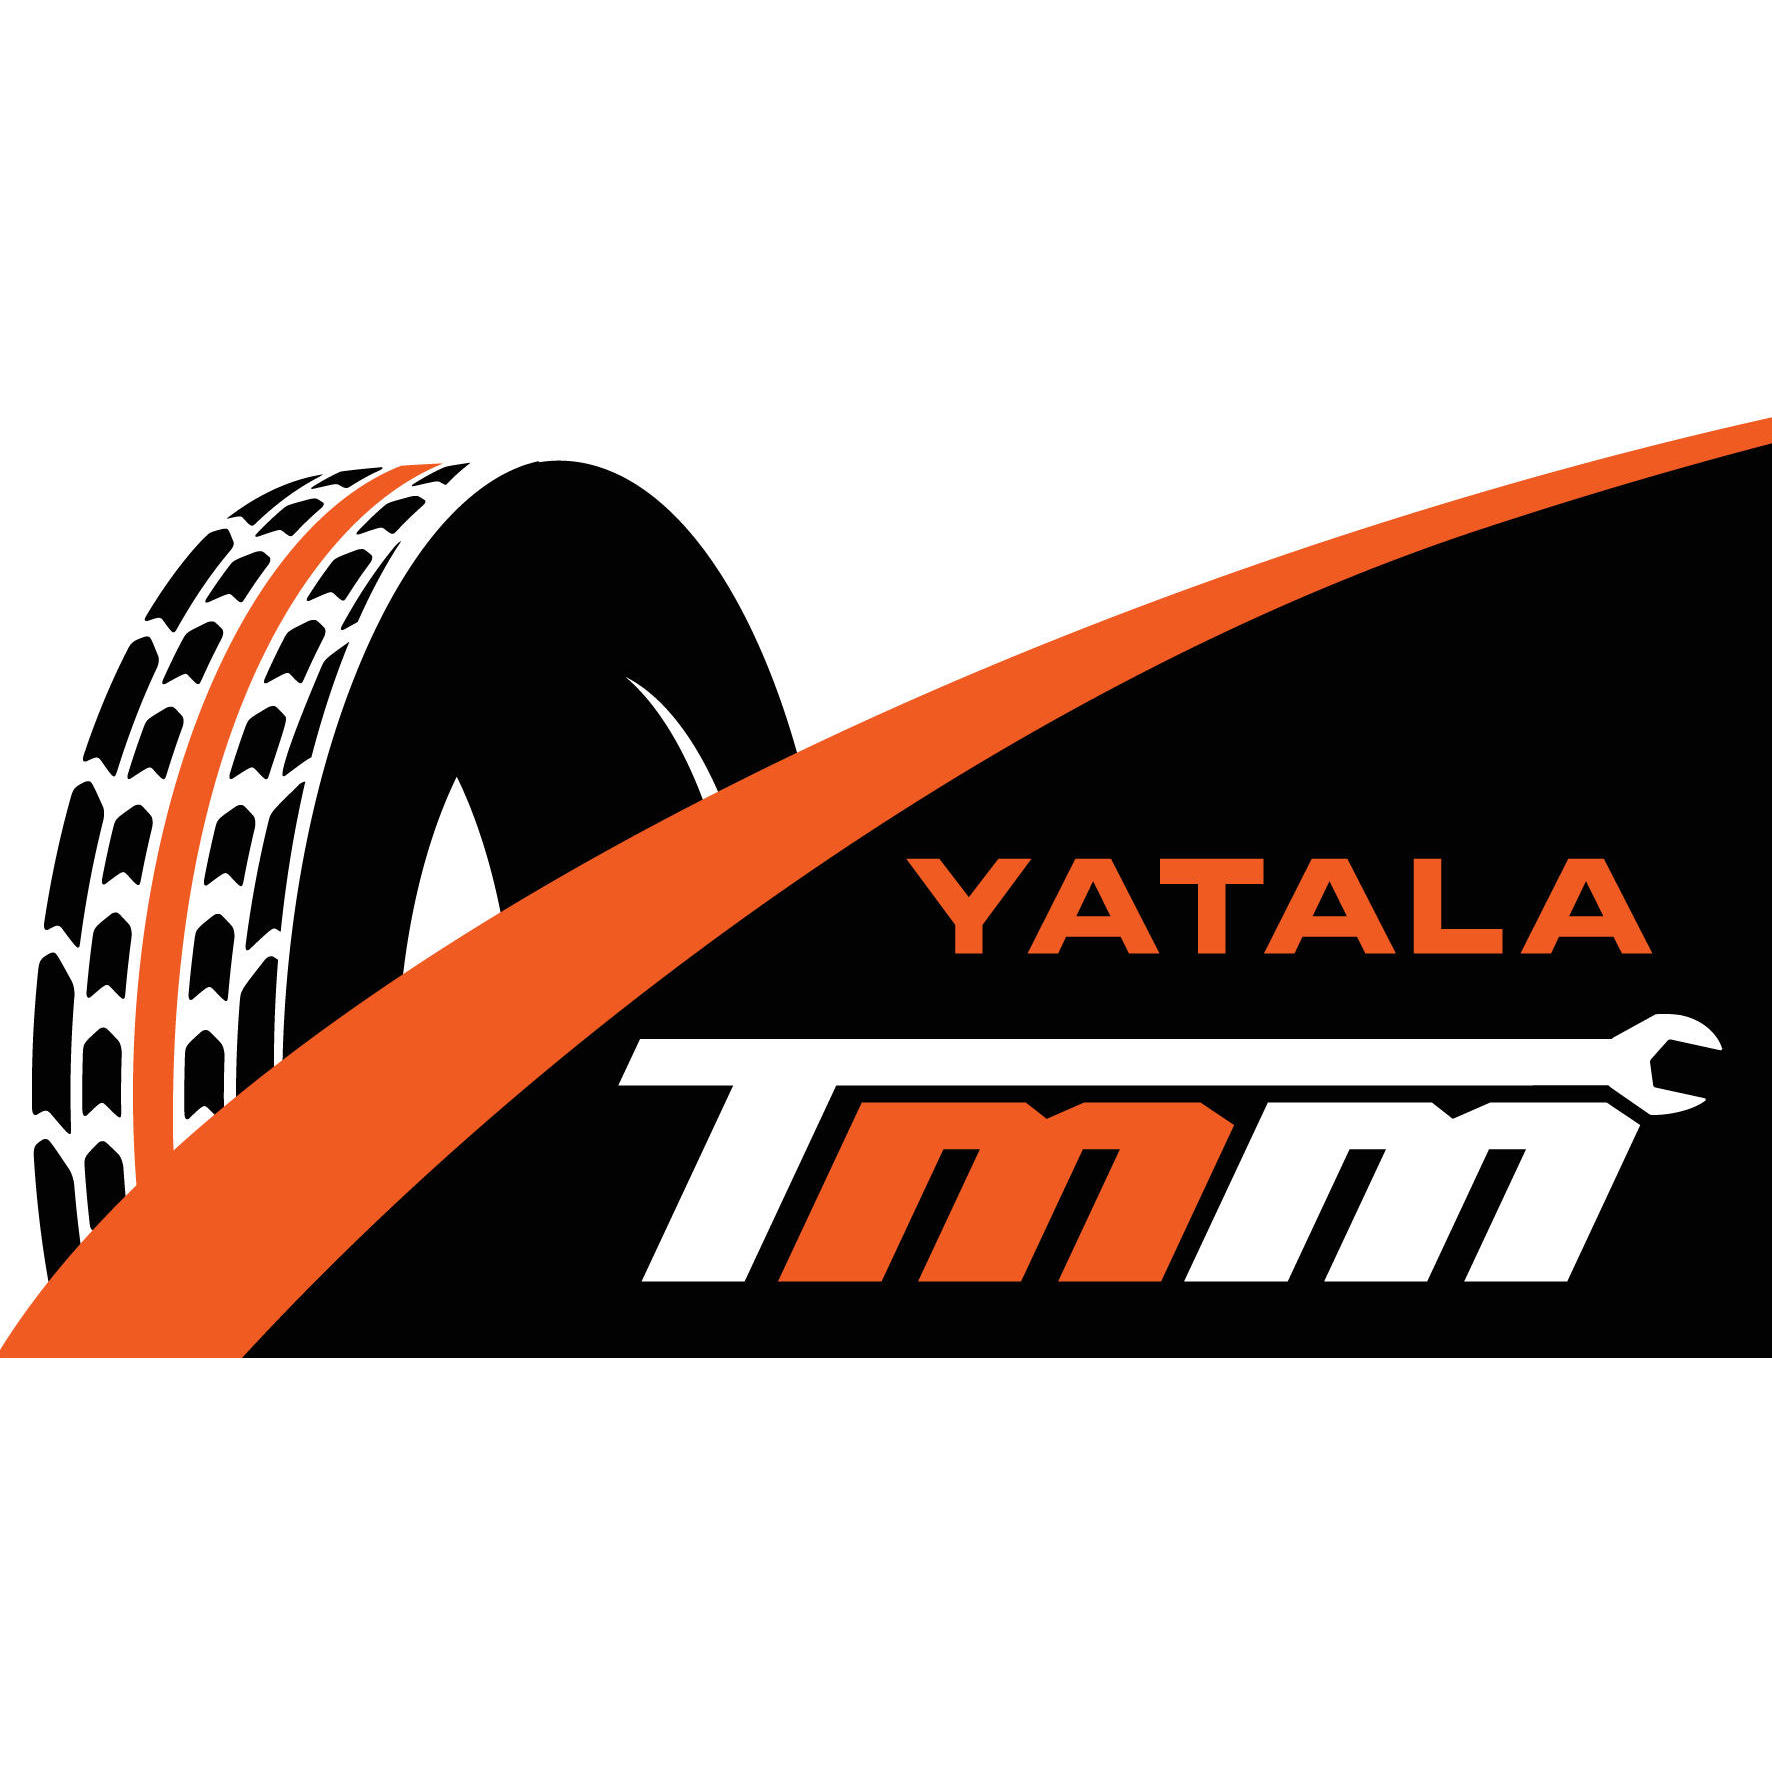 Yatala Tyres Mufflers and Mechanical Logo